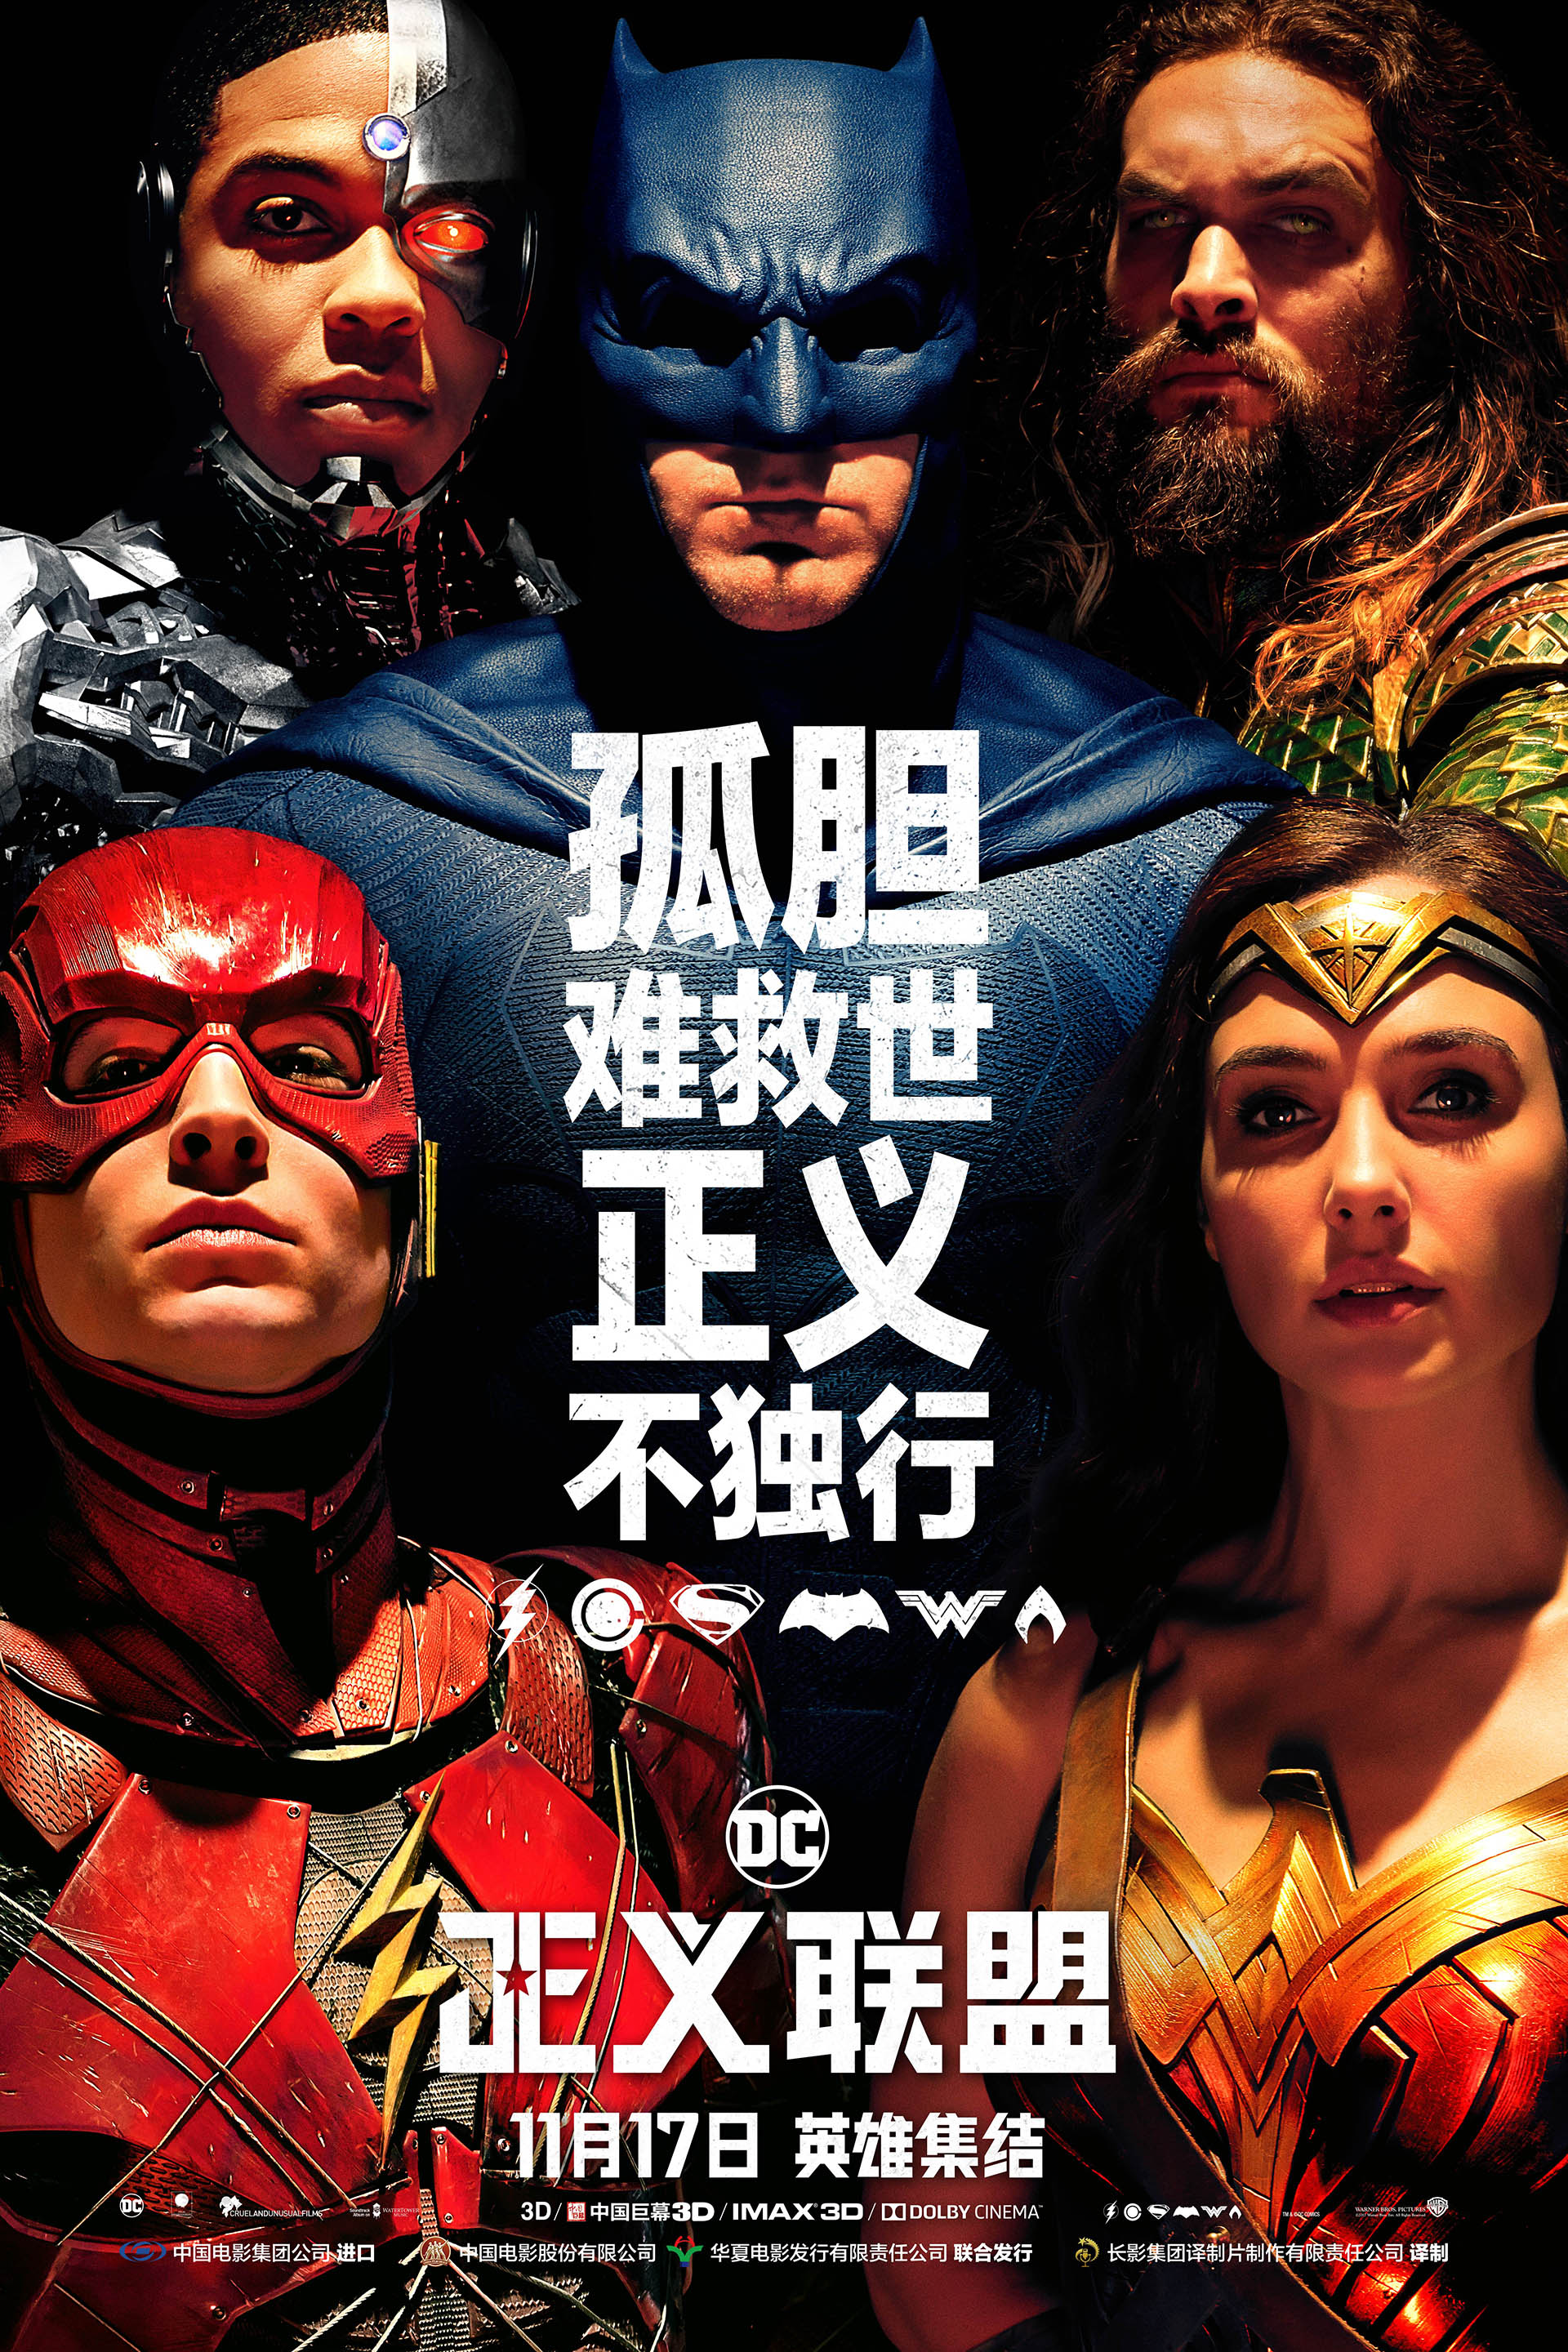 正义联盟 Justice League 超清海报图集图片